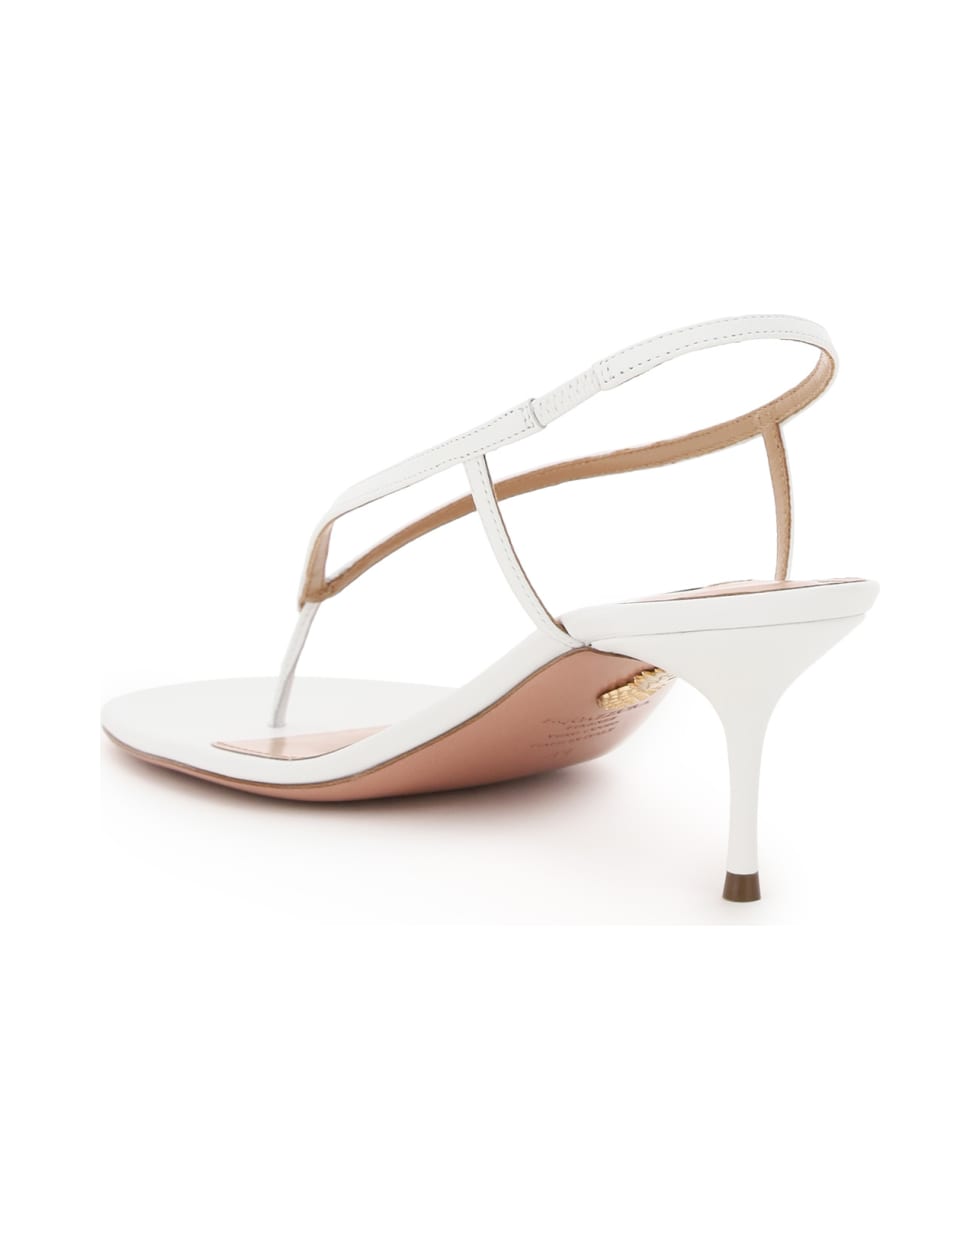 Aquazzura Divina Thong Sandals - WHITE (White)